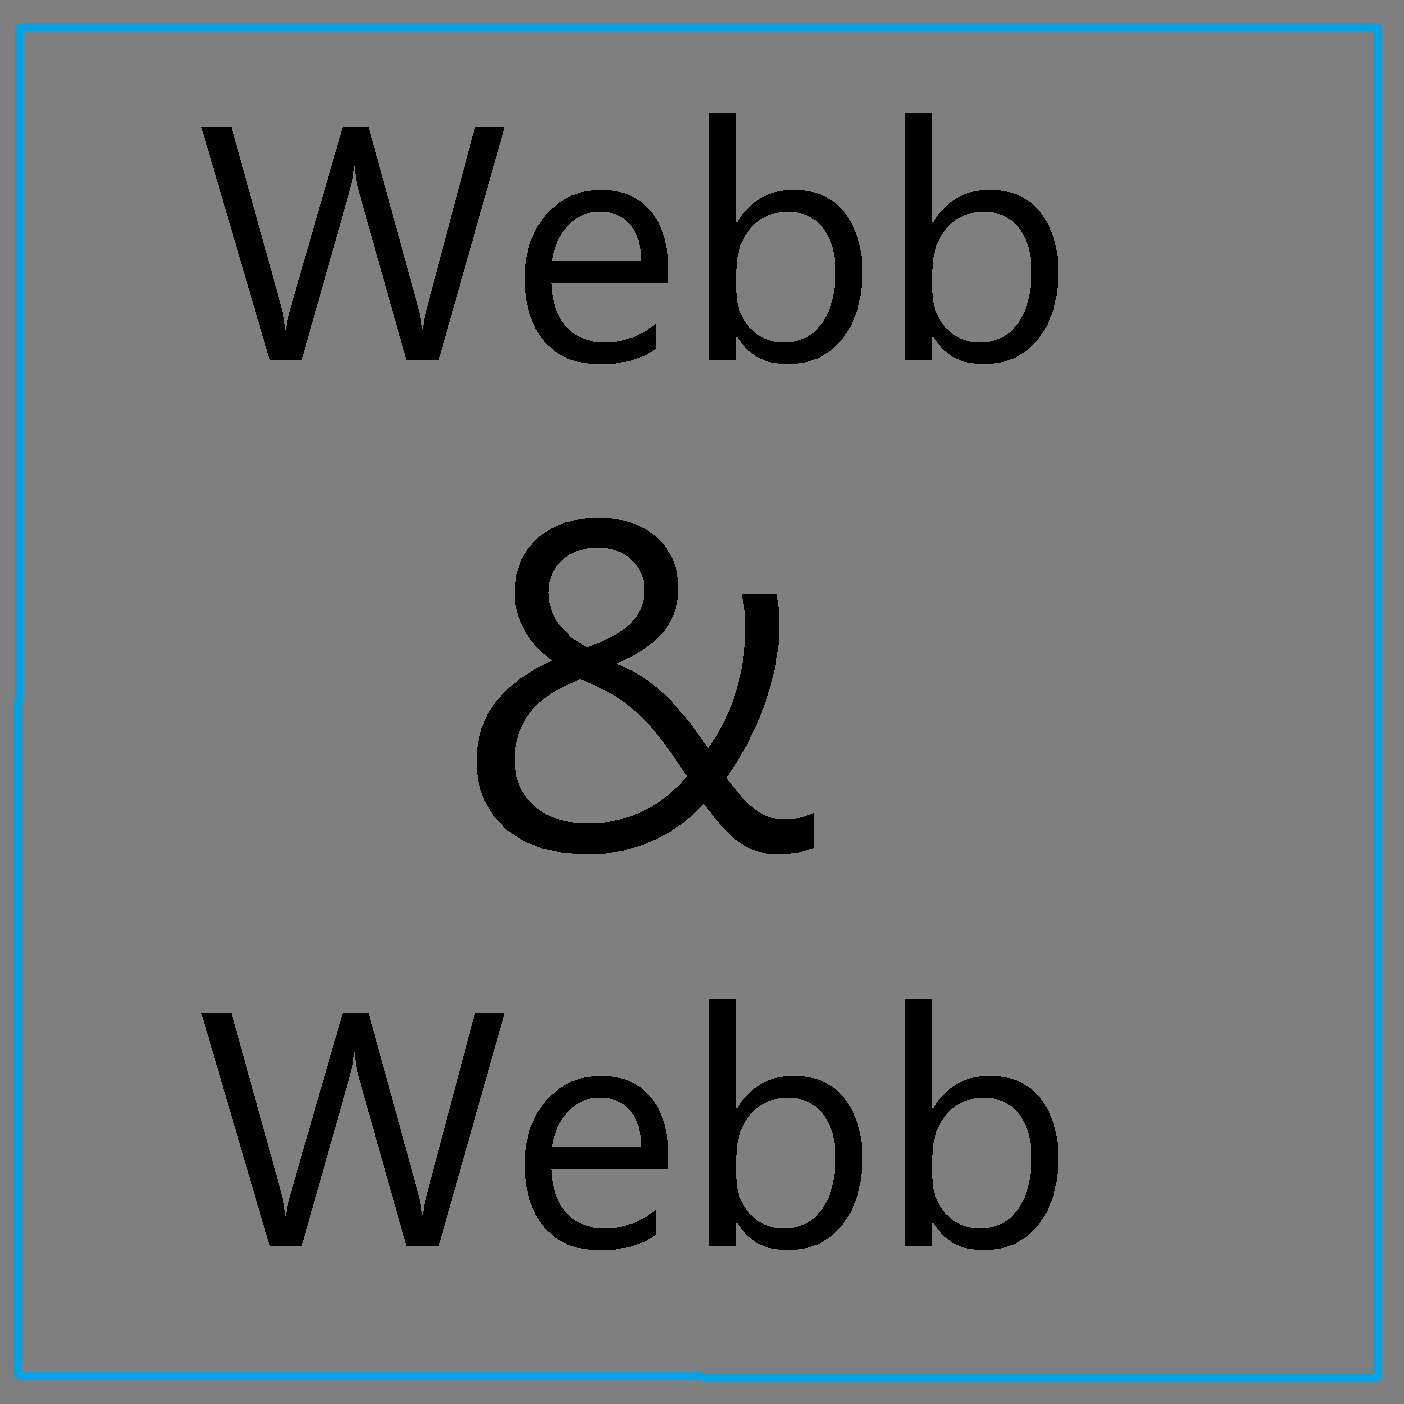 Webb & Webb Radio